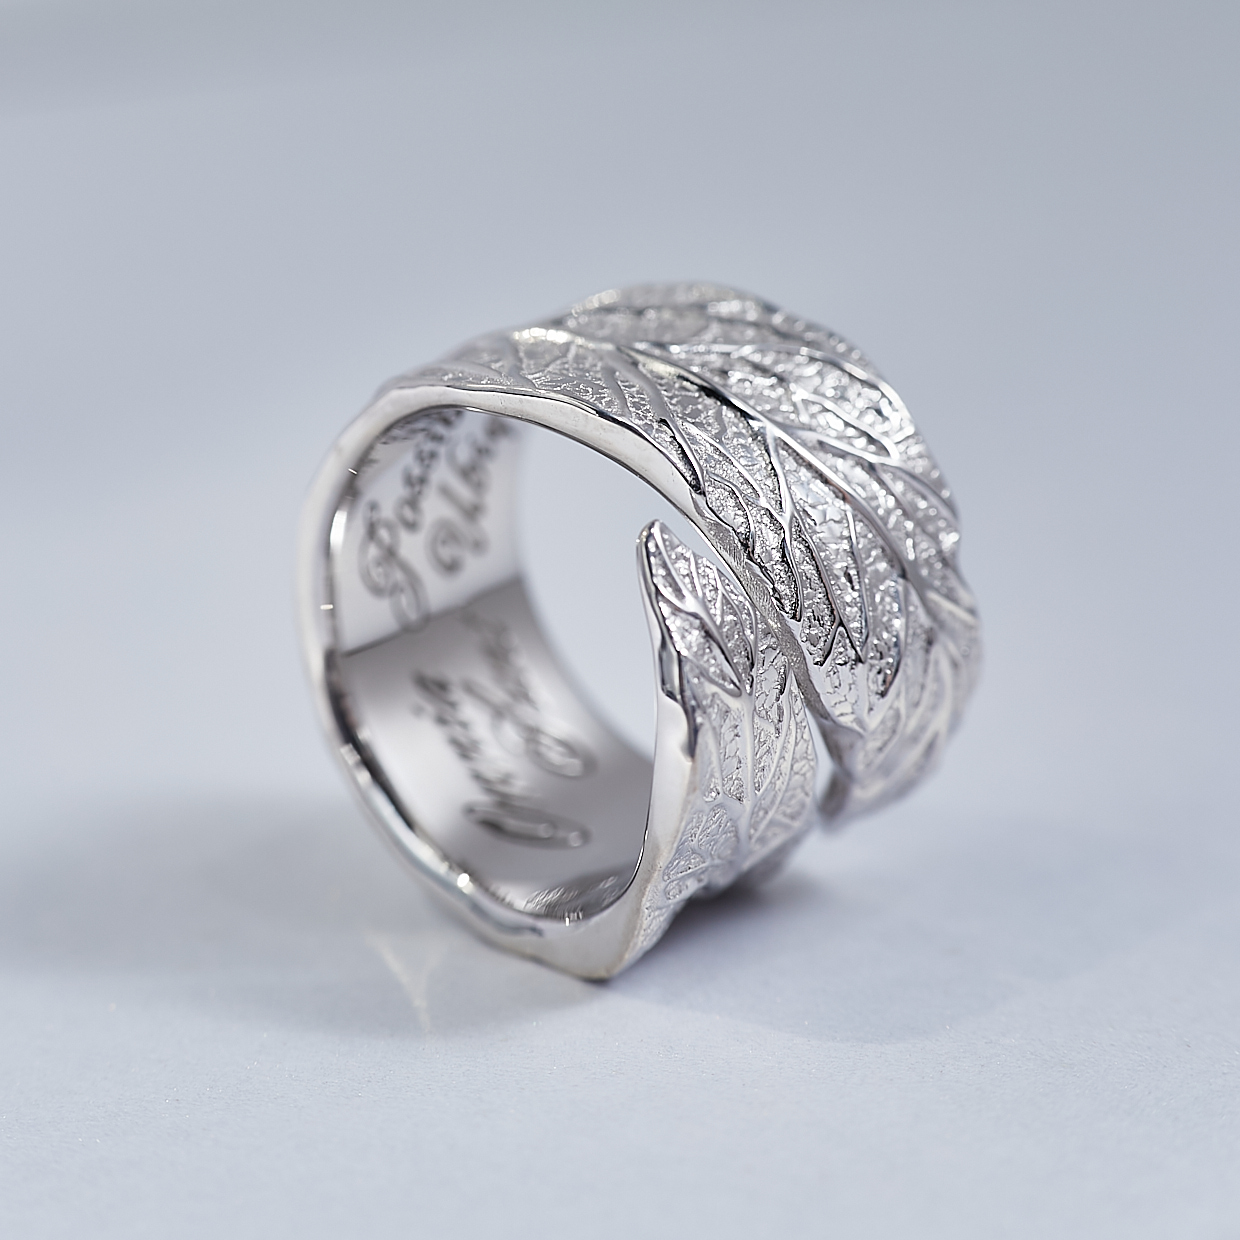  Женское серебряное кольцо с растительным орнаментом и гравировкой